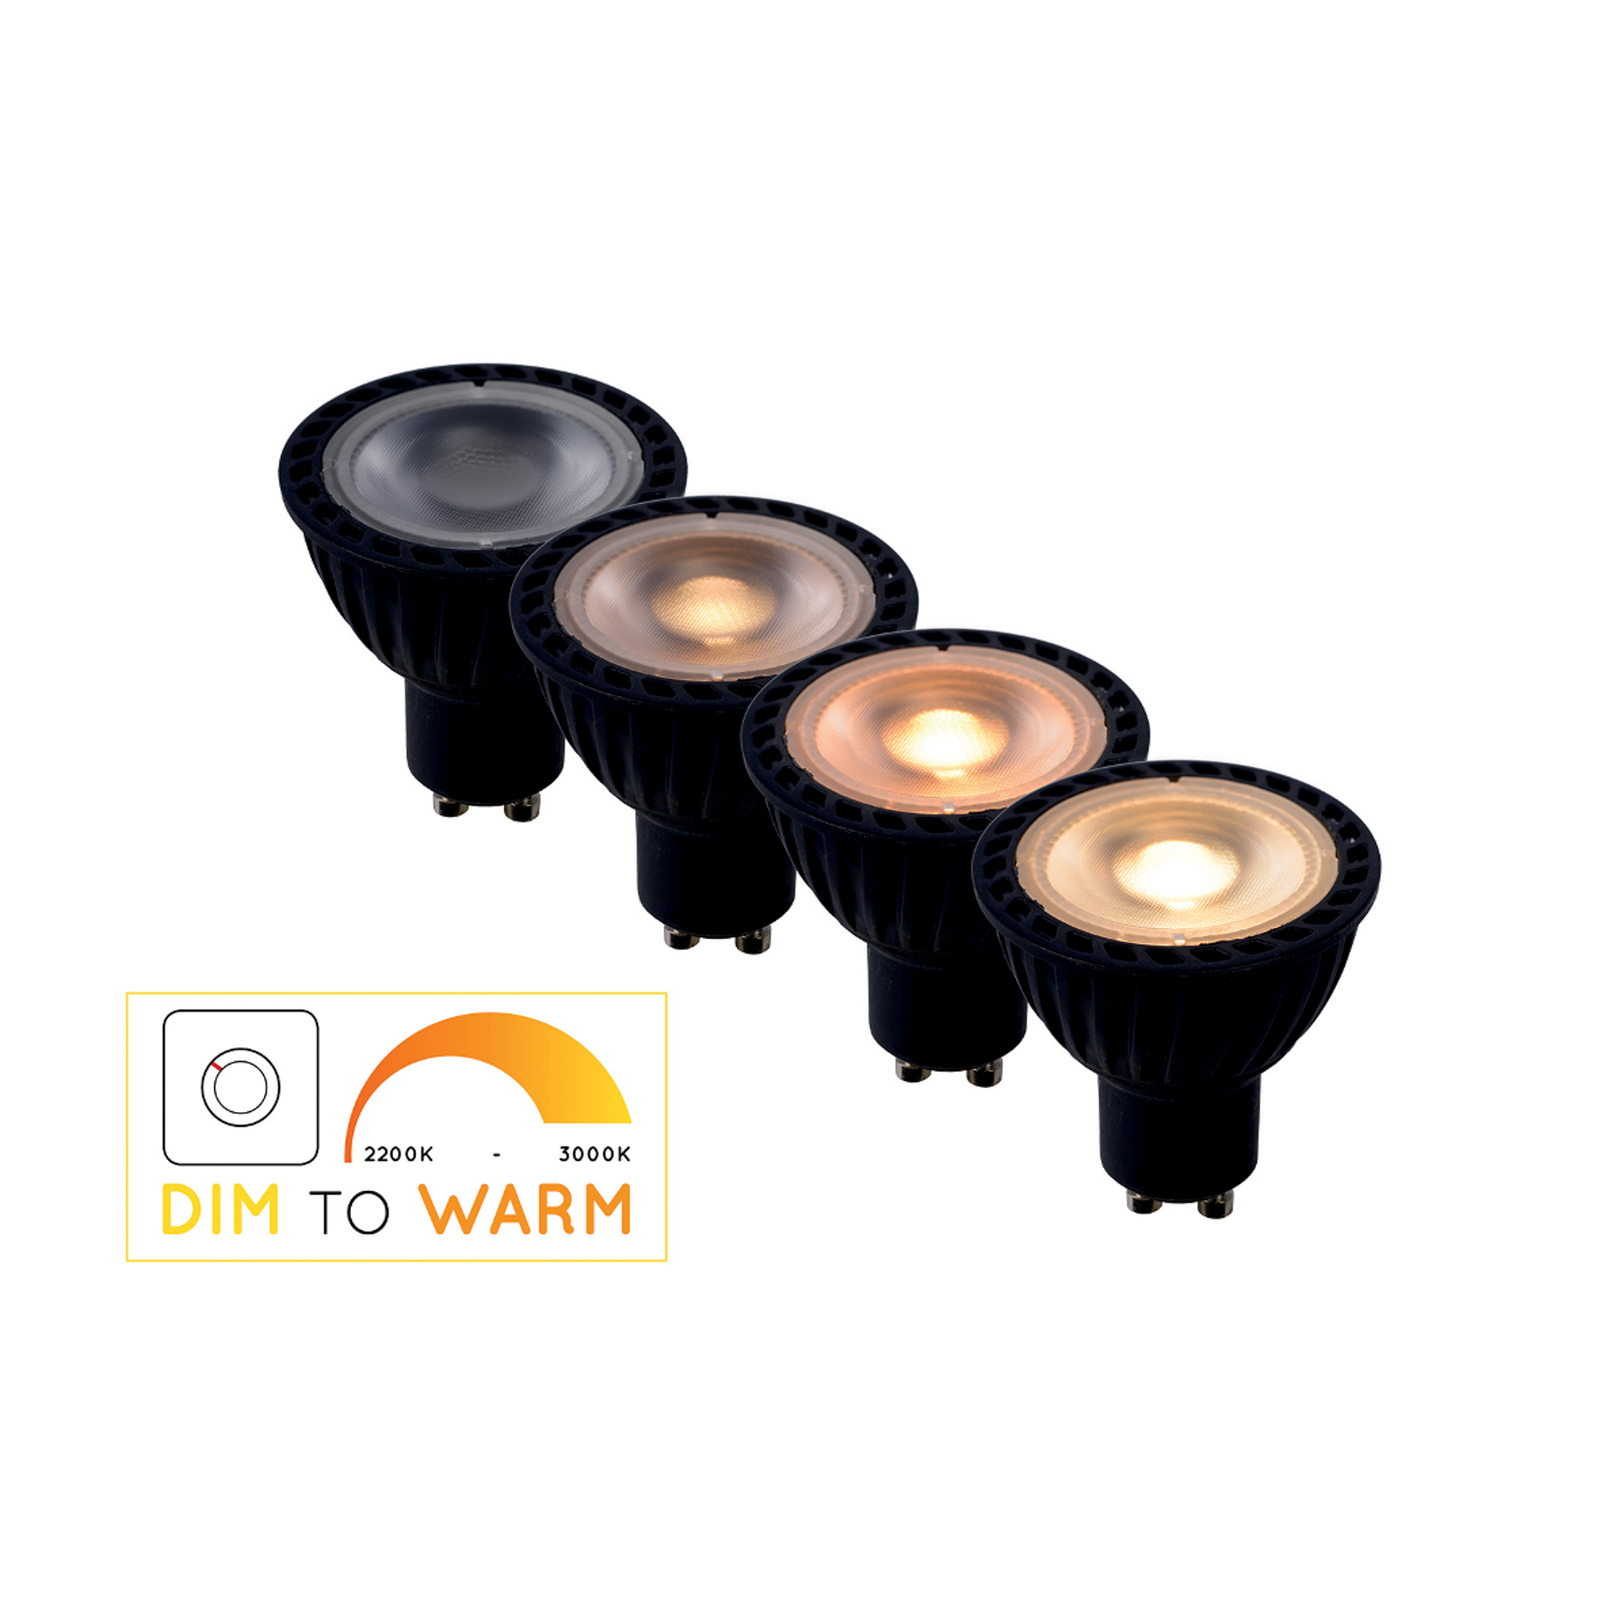 LED-heijastinlamppu GU10 5W dim to warm, musta